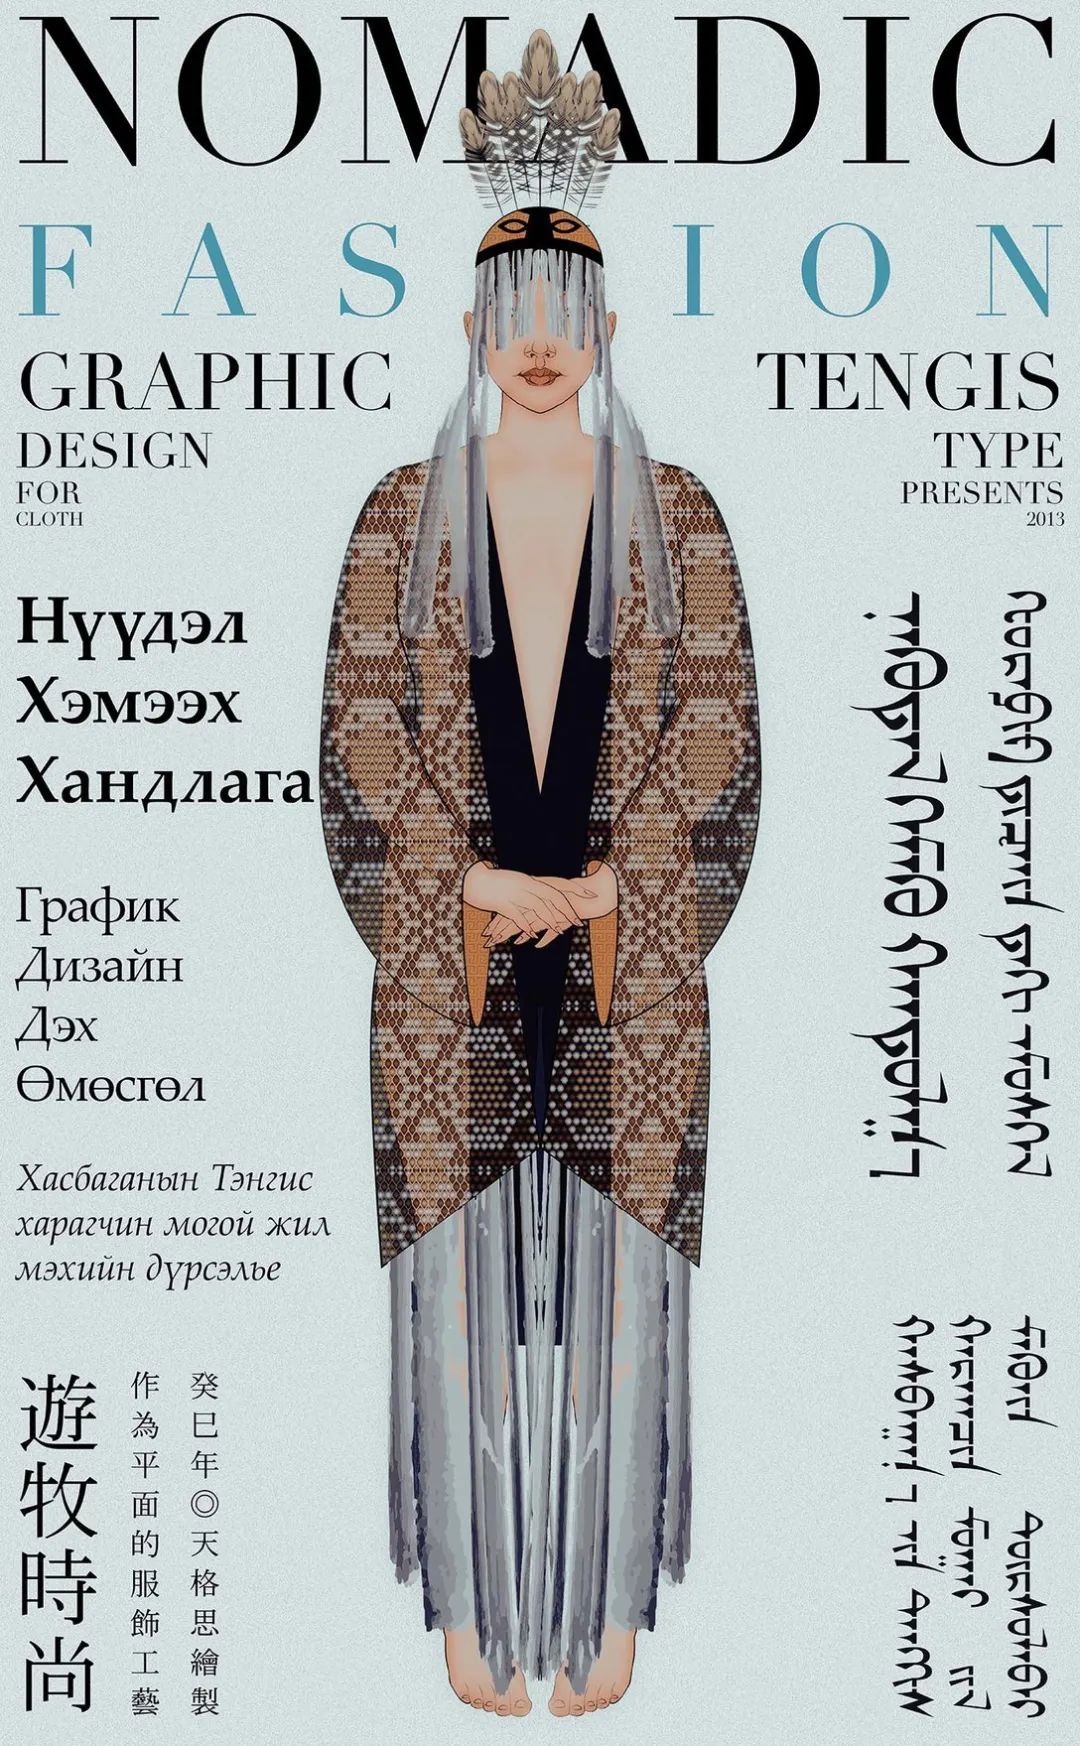 字造潮流 | 蒙古文世界的文字设计——天格思